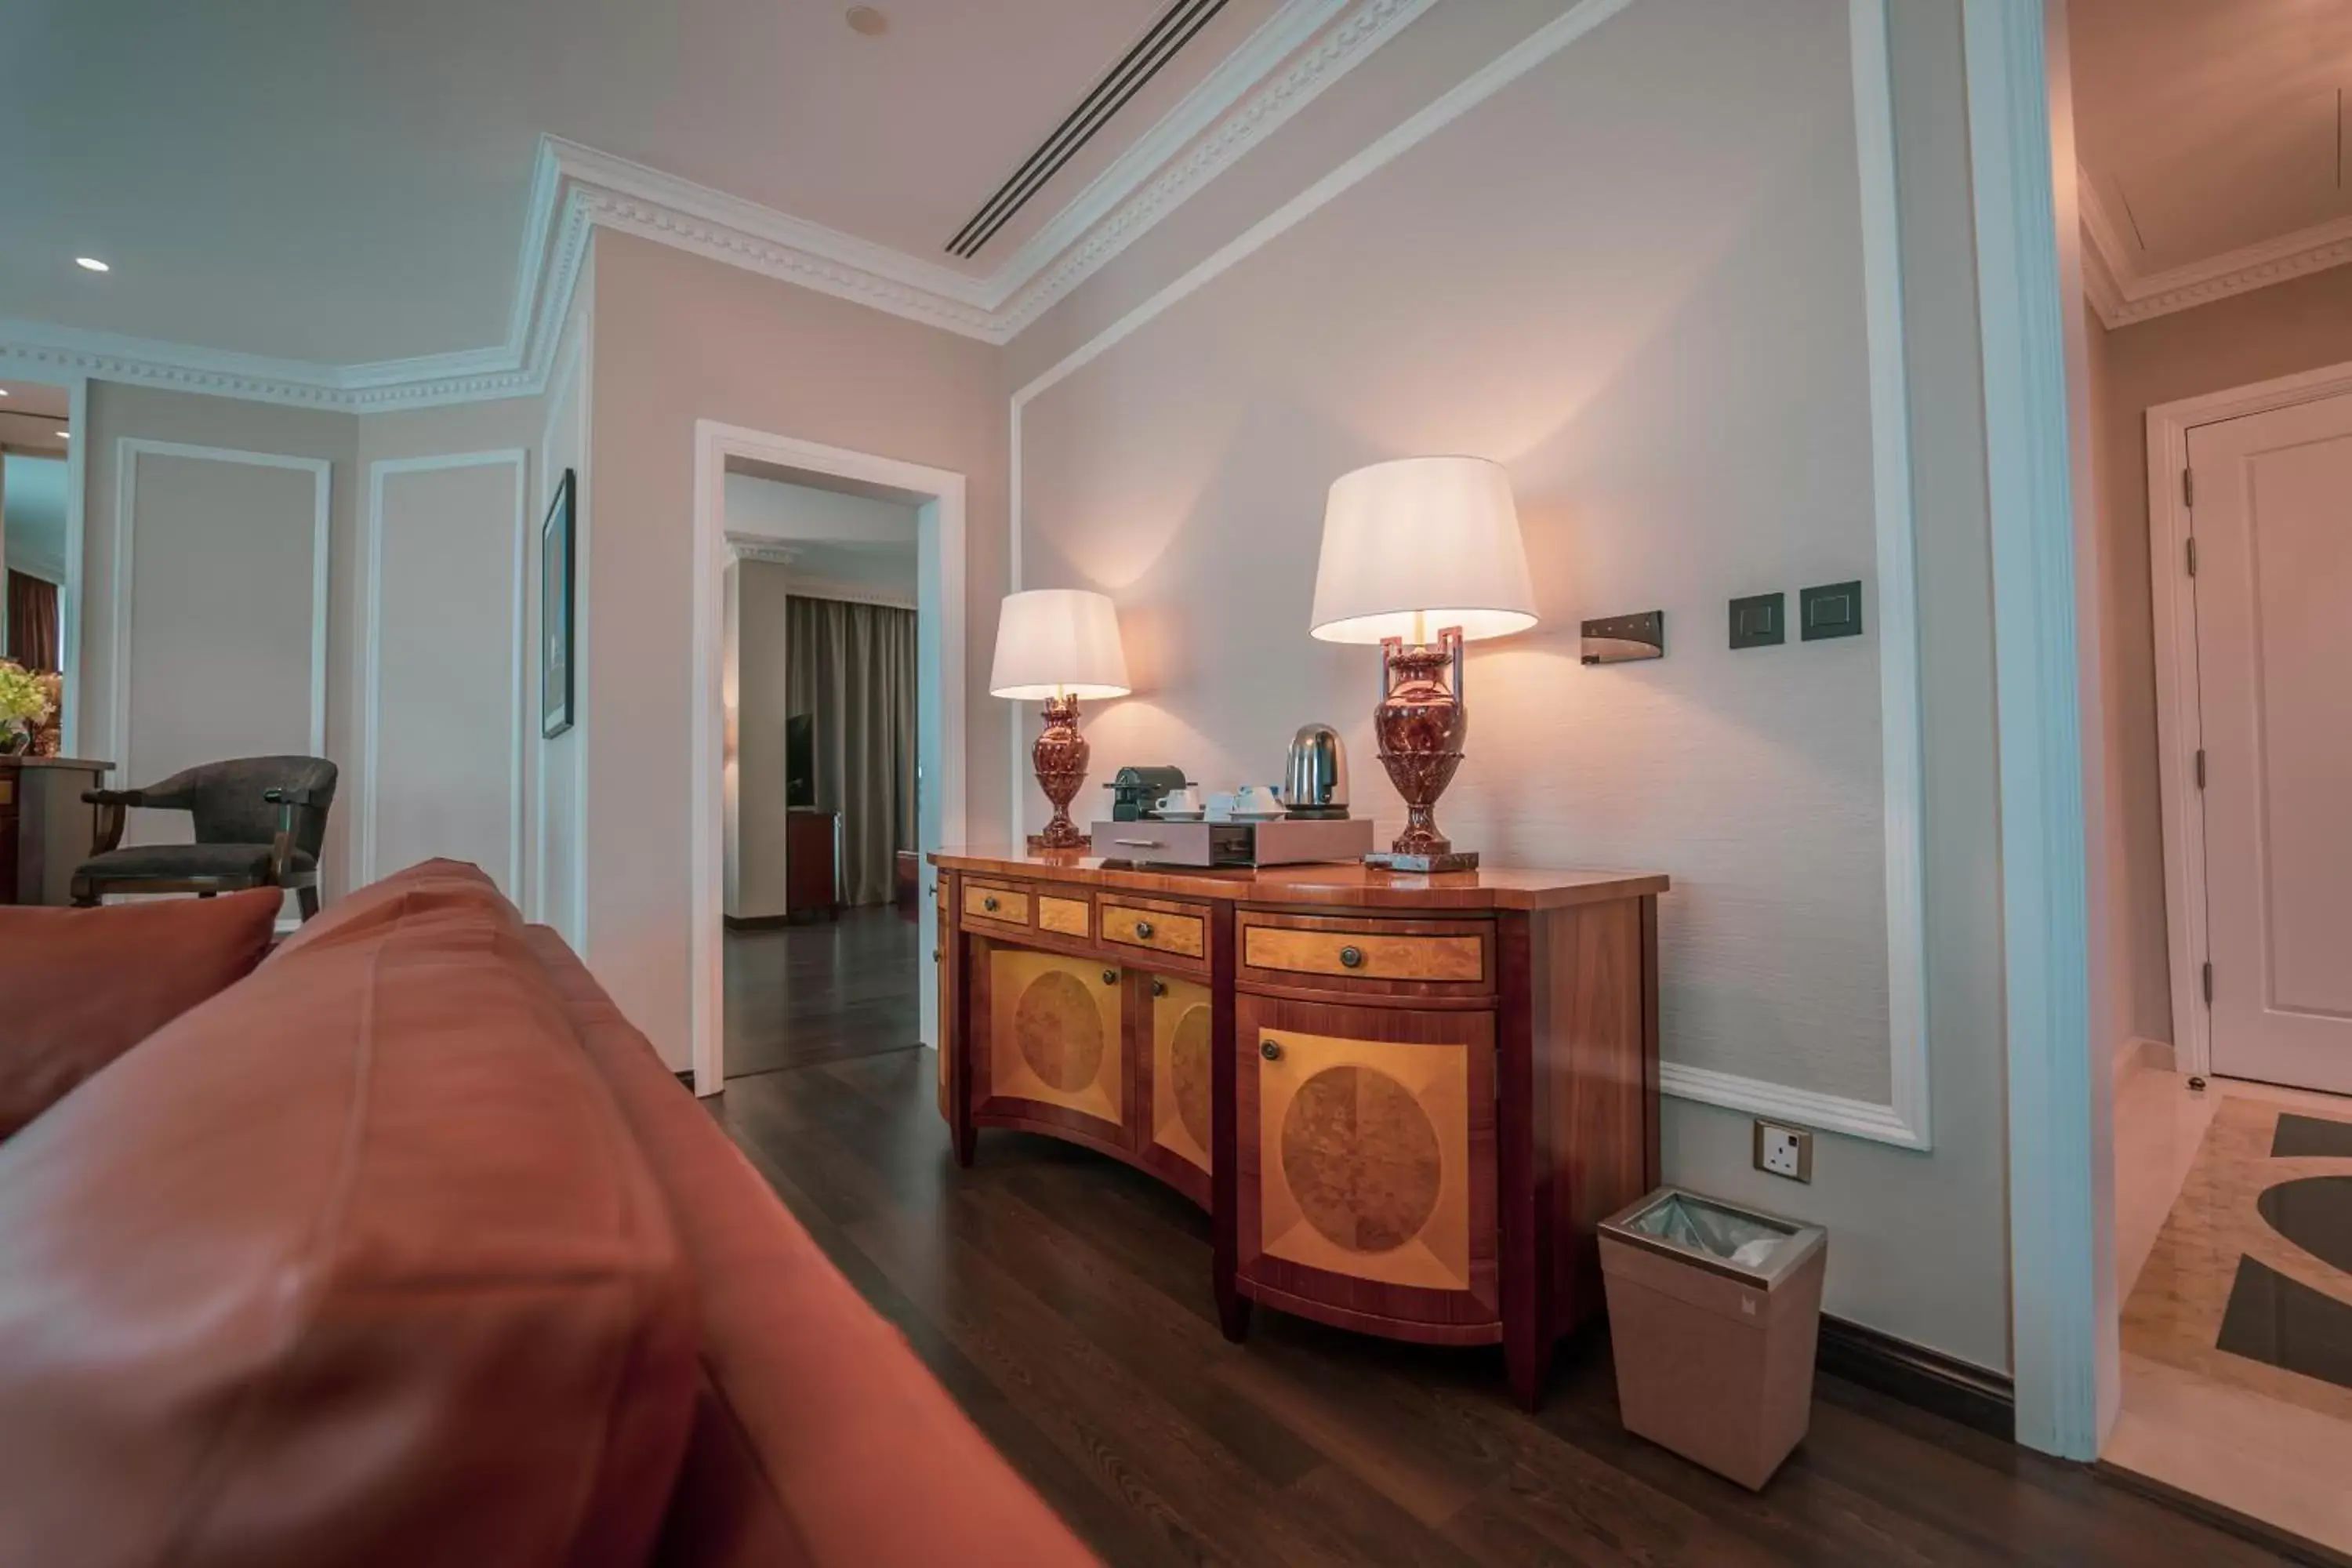 Bedroom in Millennium Hotel Doha